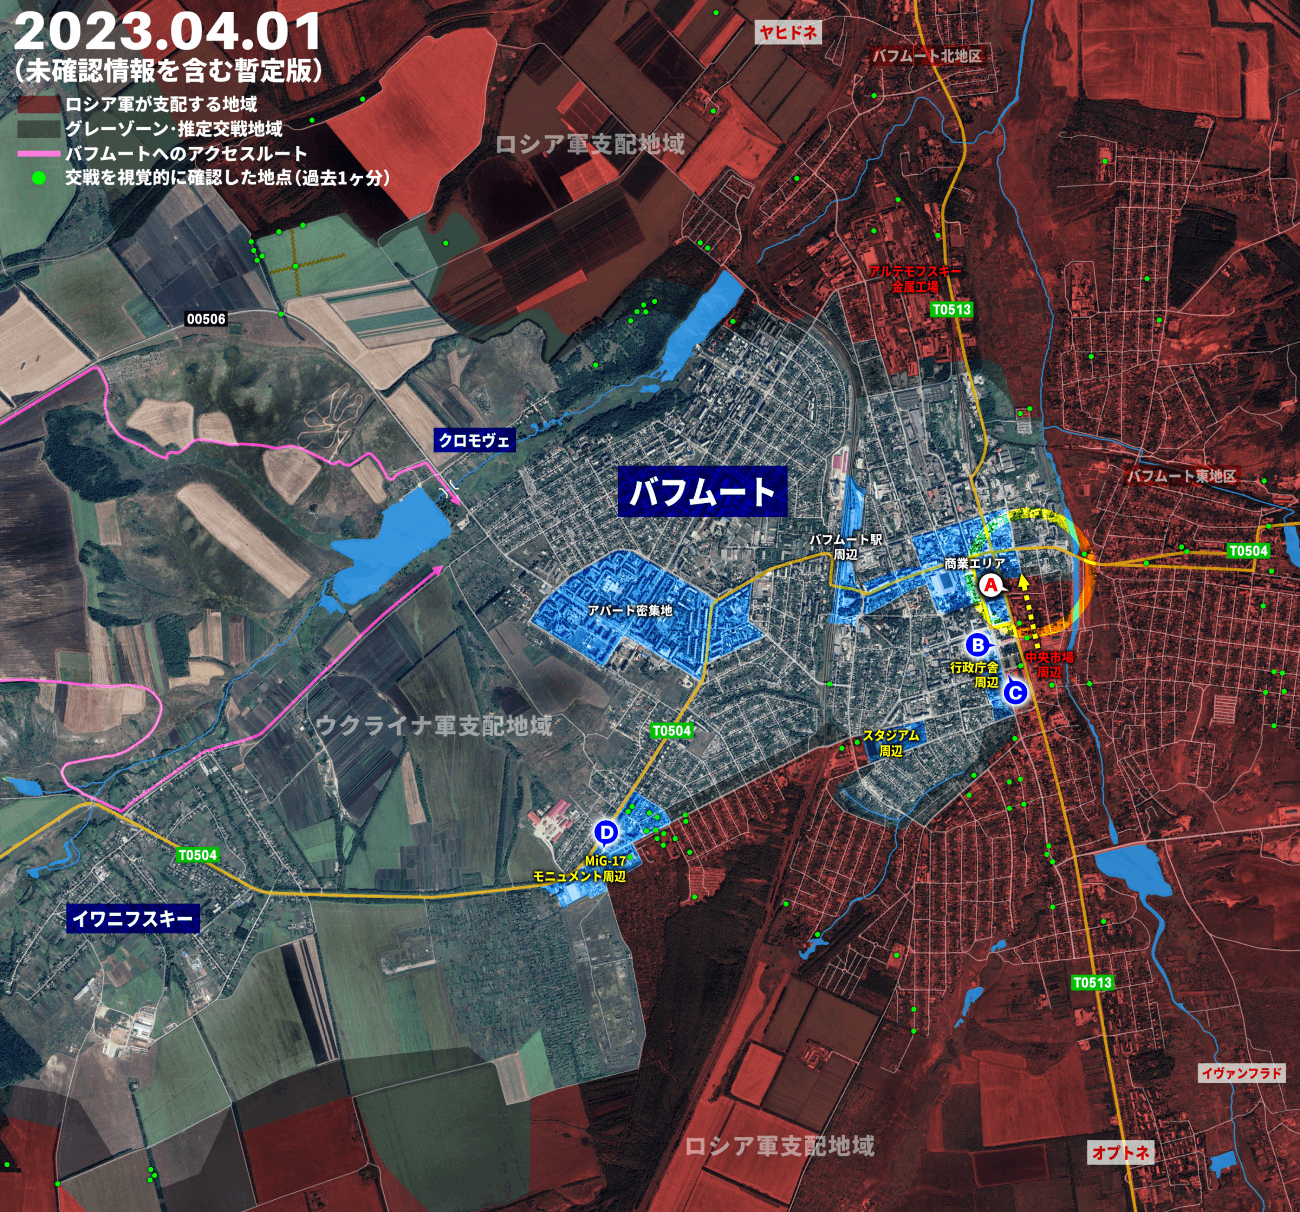 ウクライナ侵攻401日目の戦況、露ワグナーがバフムート中心部の一角に到達